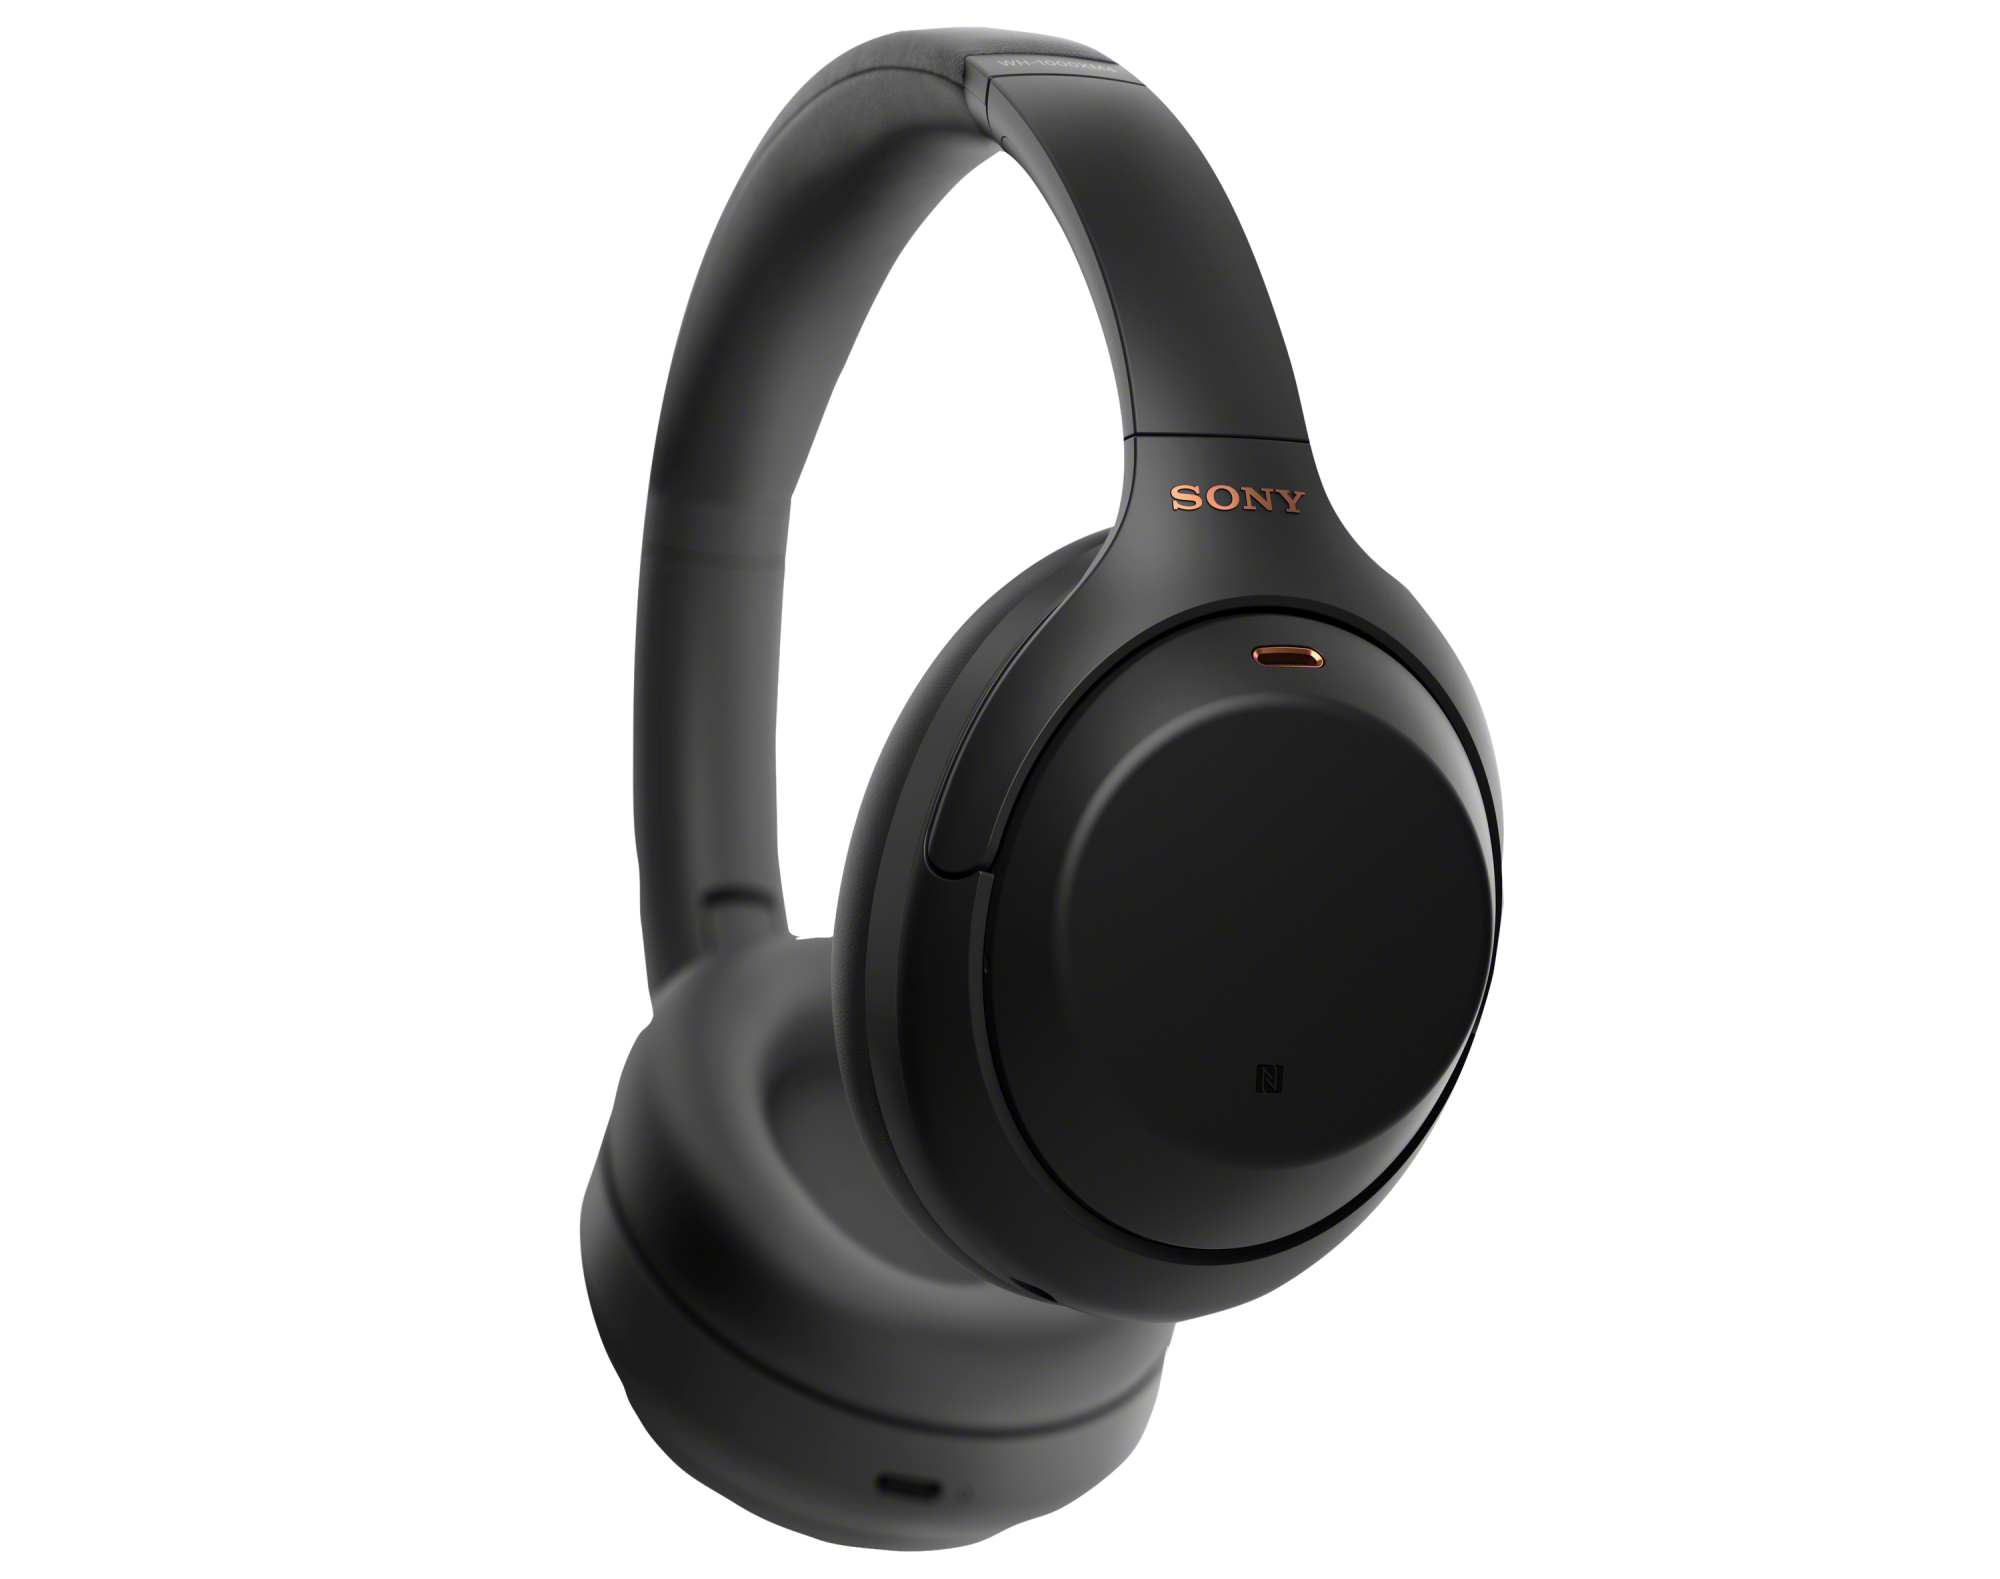 Sony XM4 noise-canceling headphones